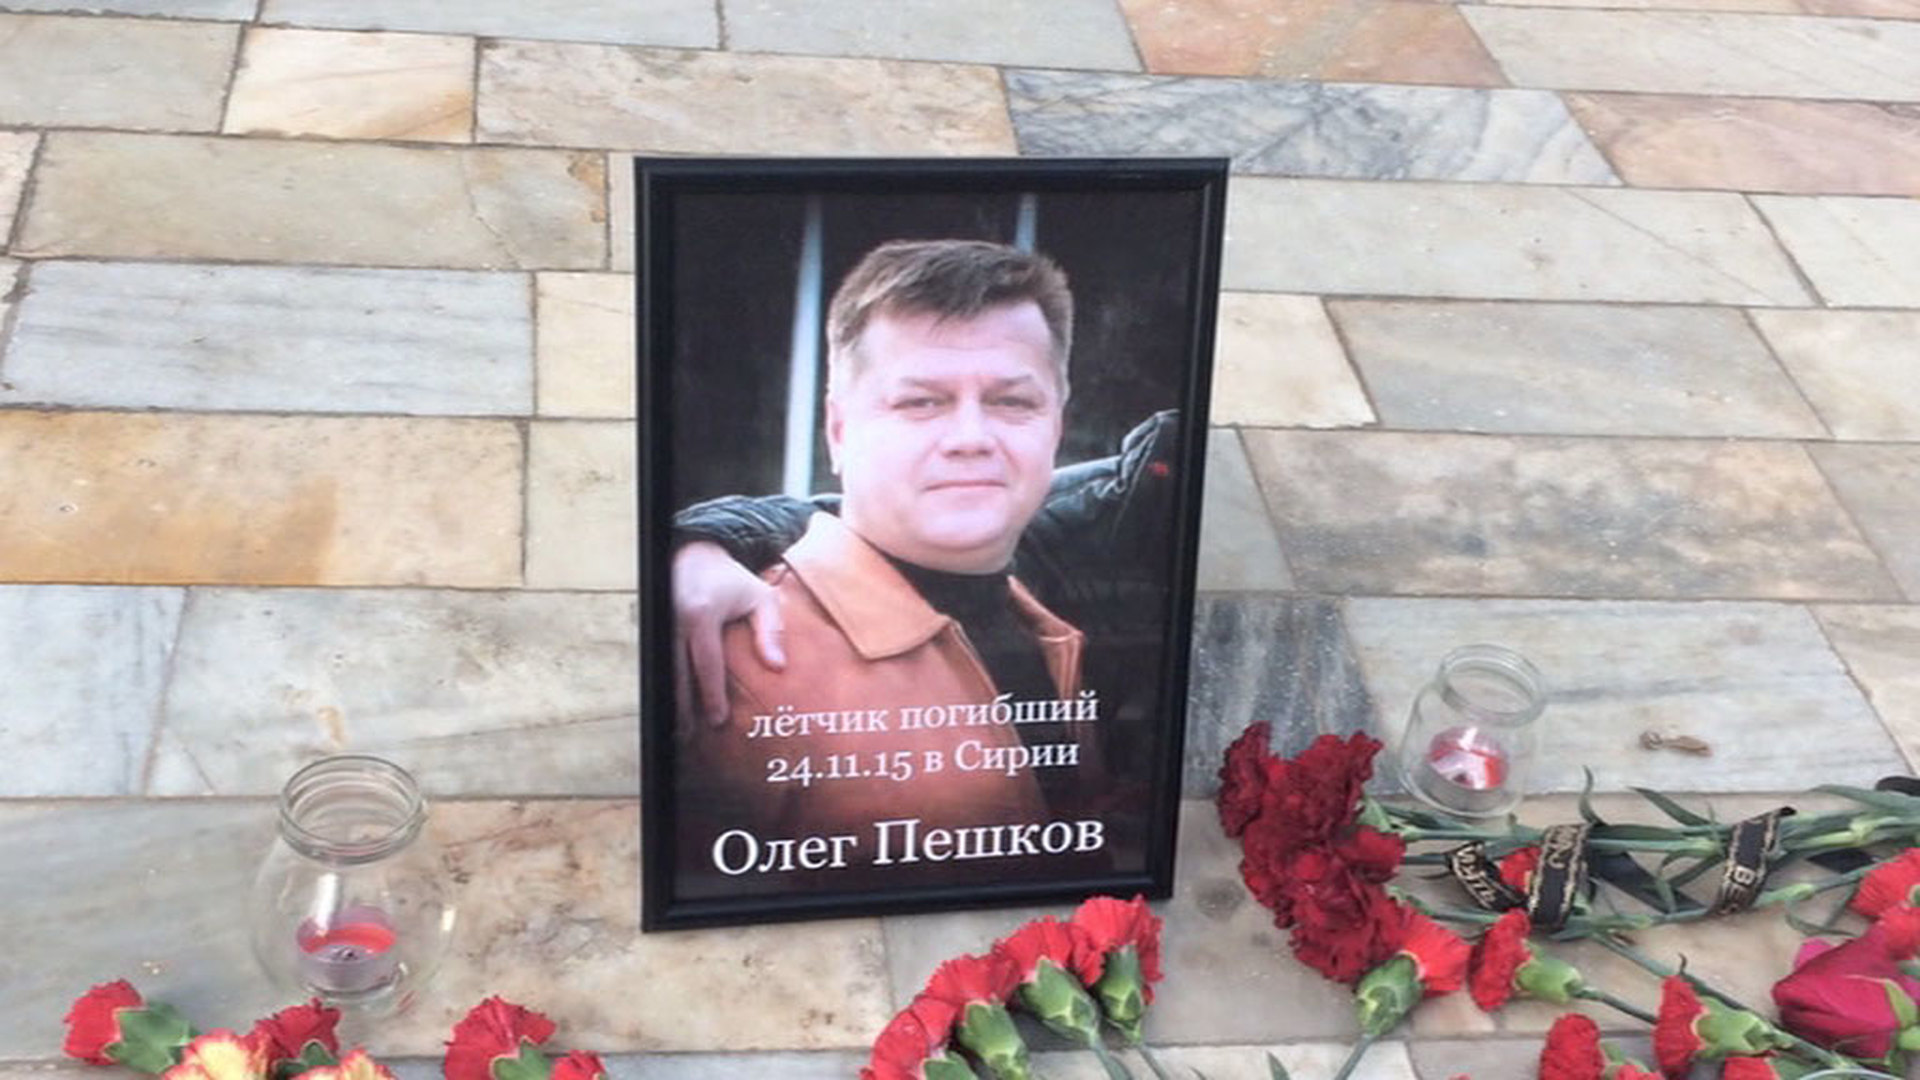 Олег Пешков летчик погибший в Сирии